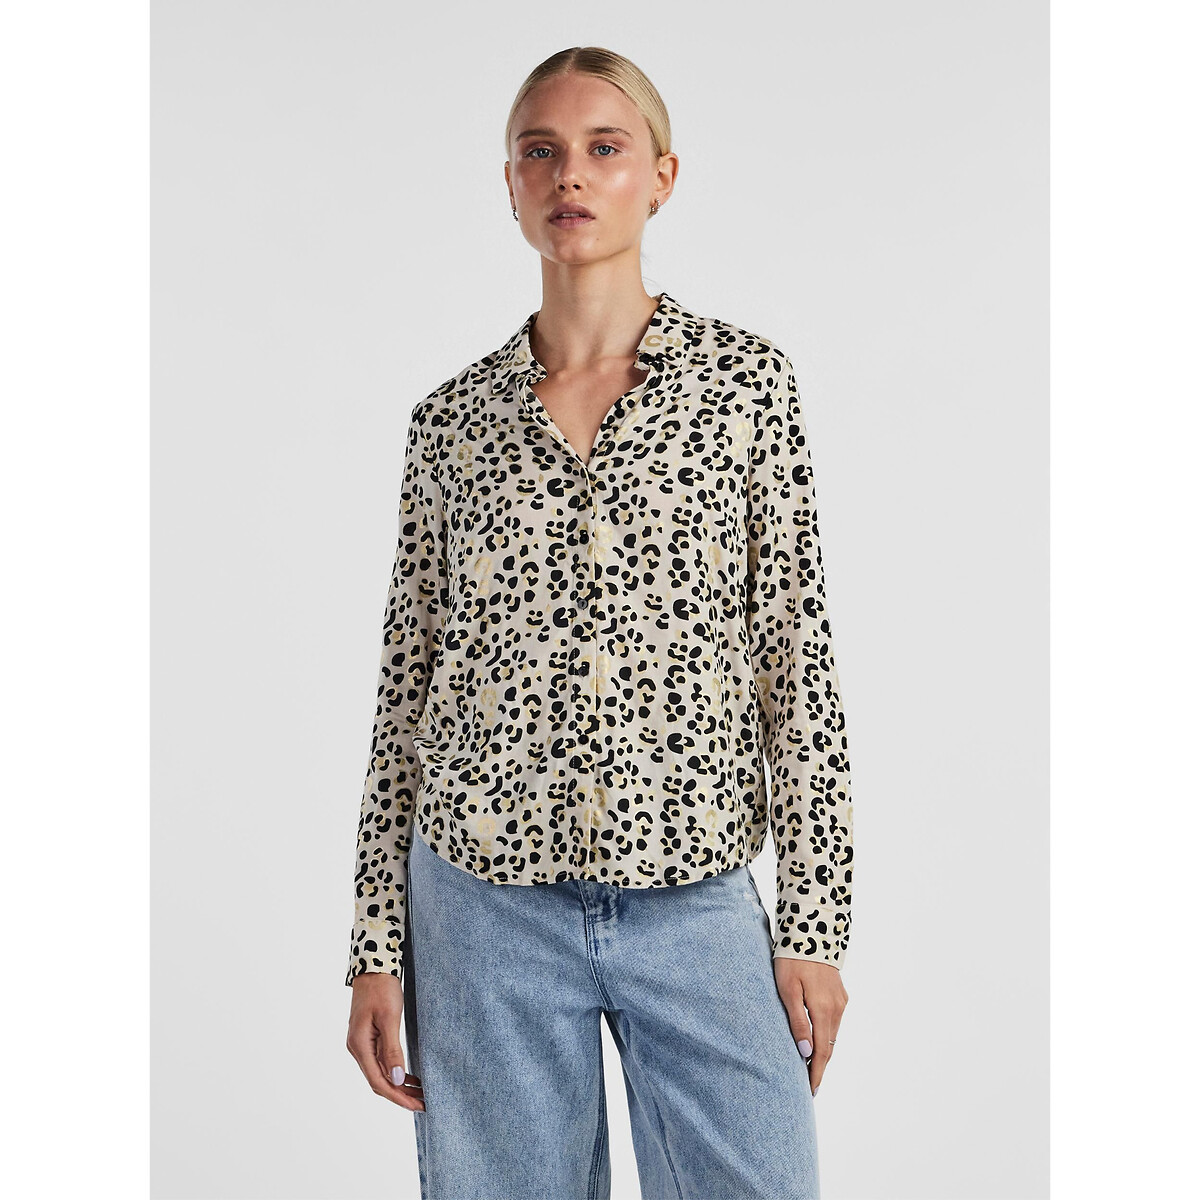 Блузка с длинными рукавами и леопардовым принтом XL другие блузка с леопардовым принтом xs другие